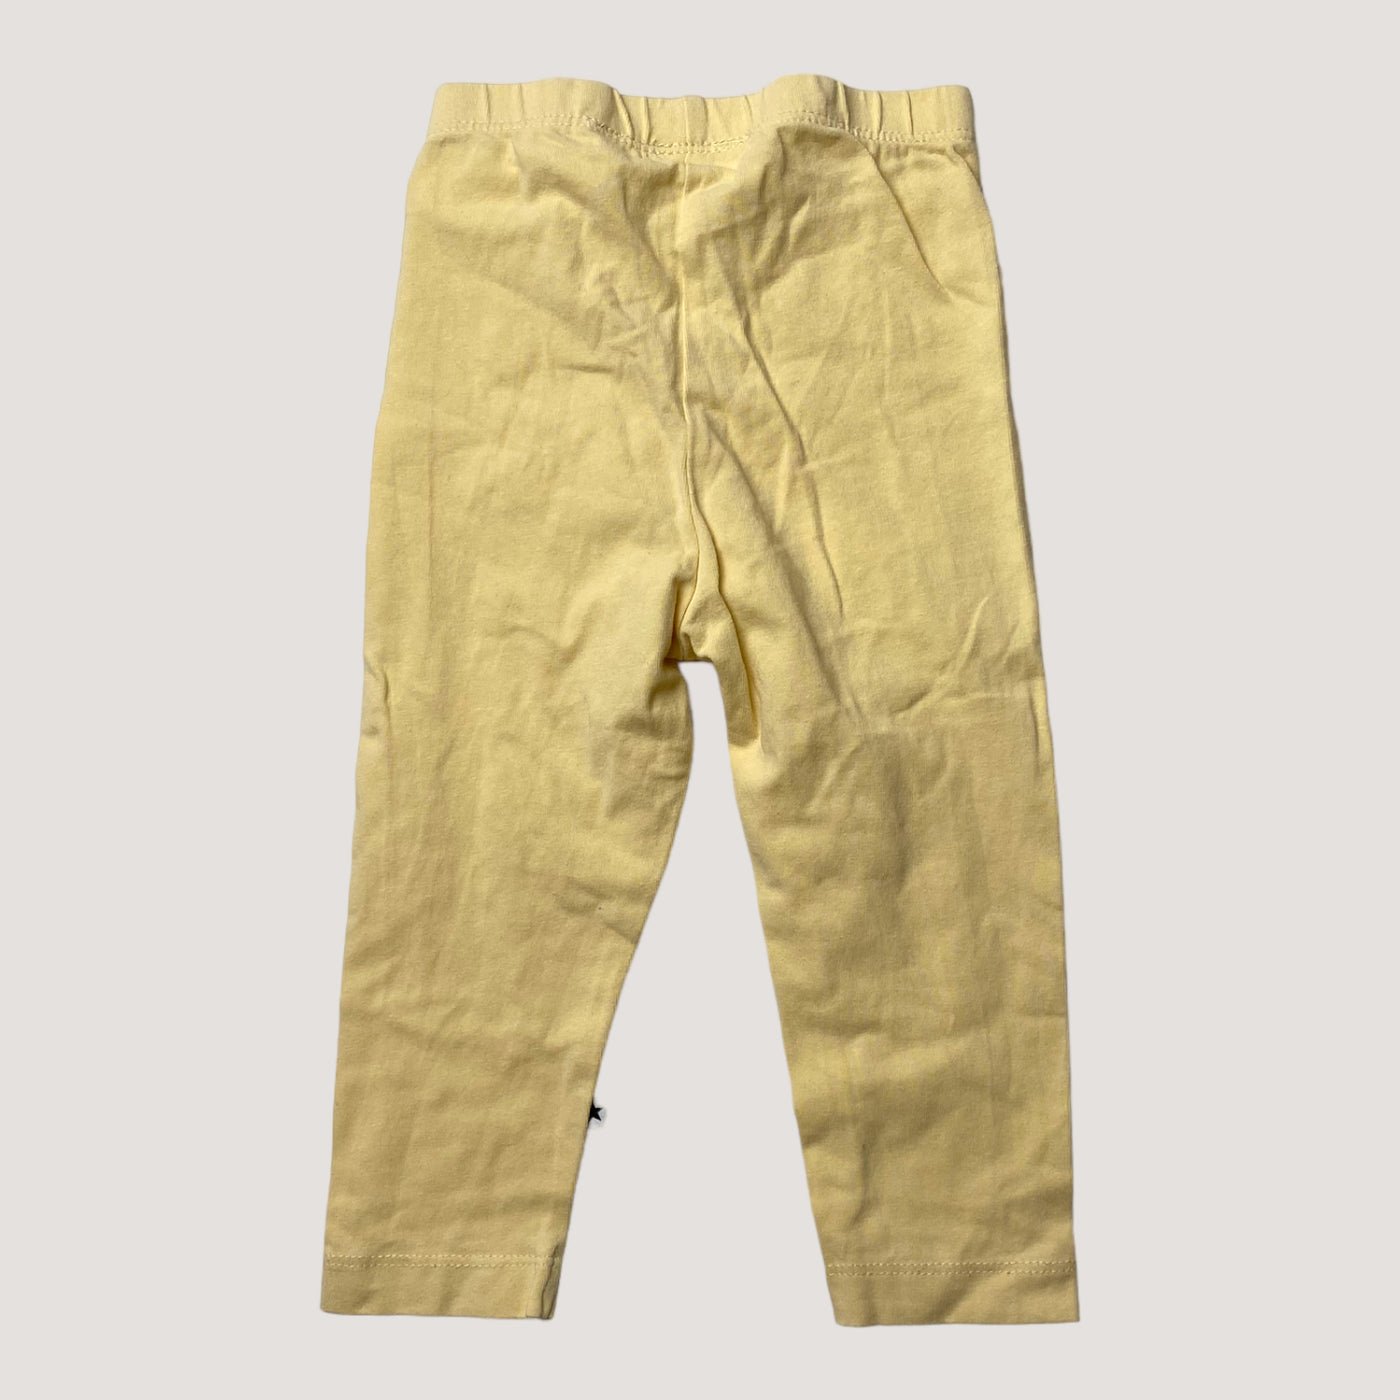 Molo leggings, lemon chiffon | 80cm